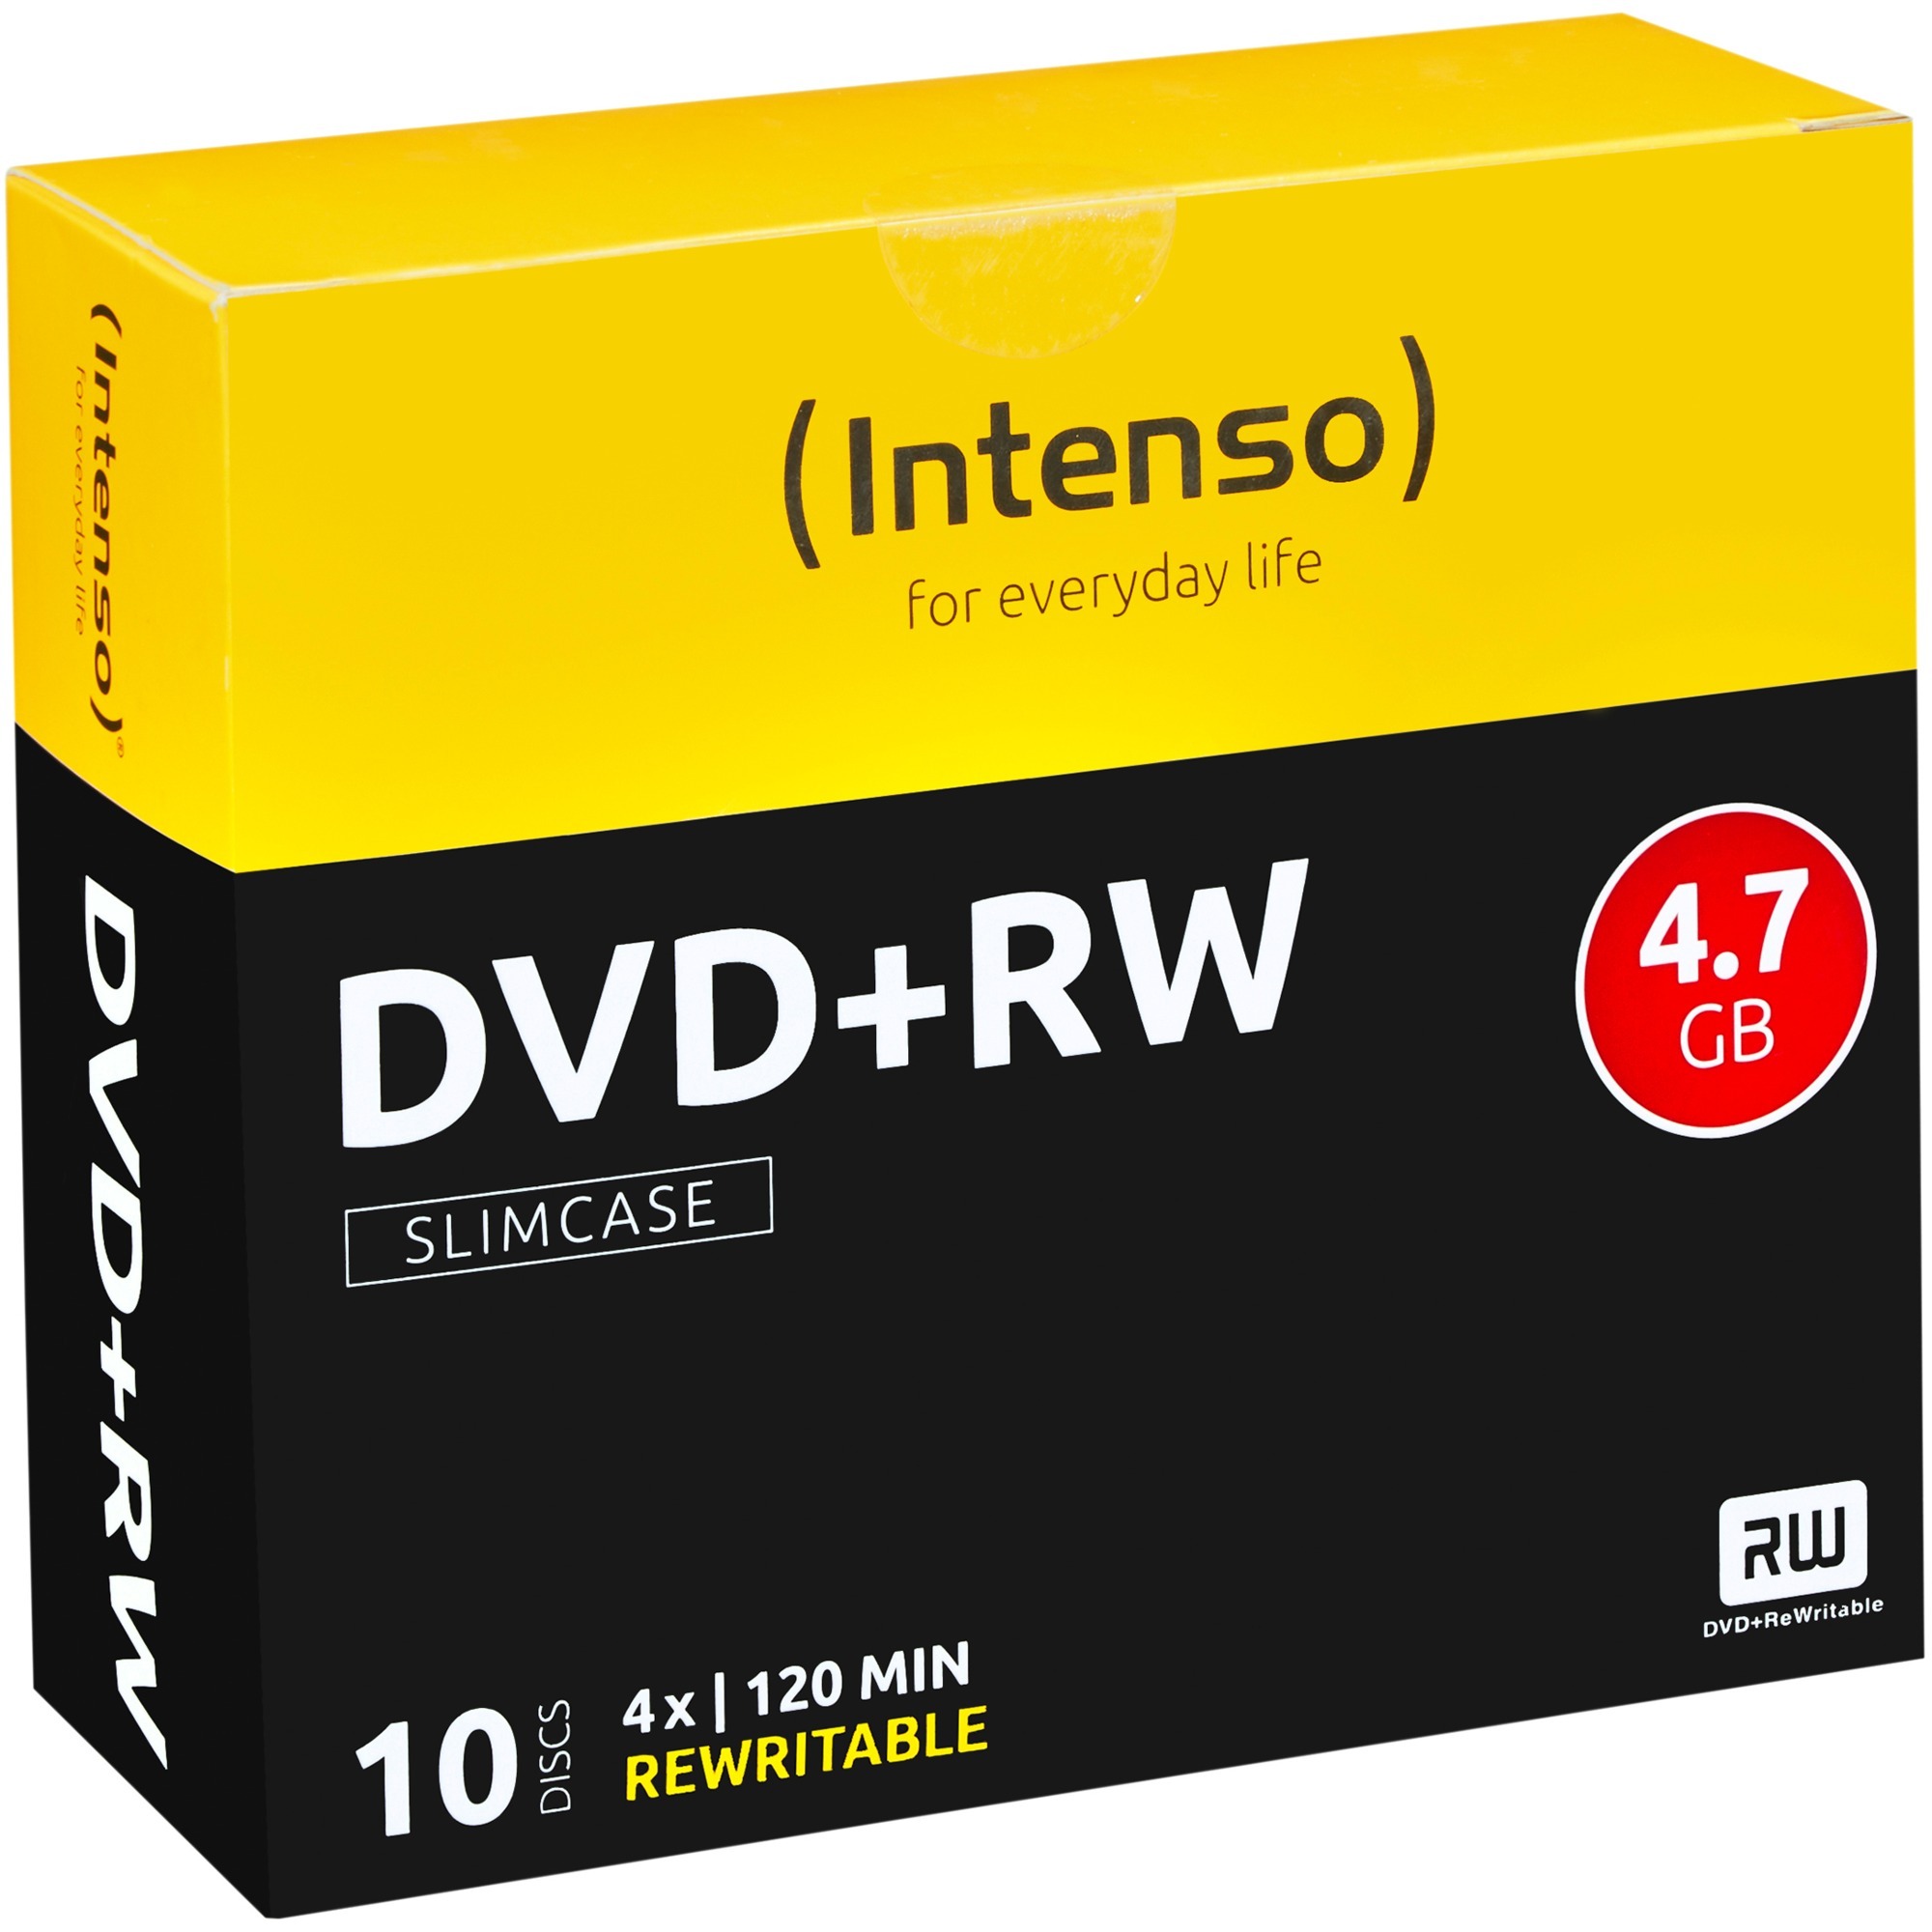 Image of Alternate - DVD+RW 4,7 GB, DVD-Rohlinge online einkaufen bei Alternate